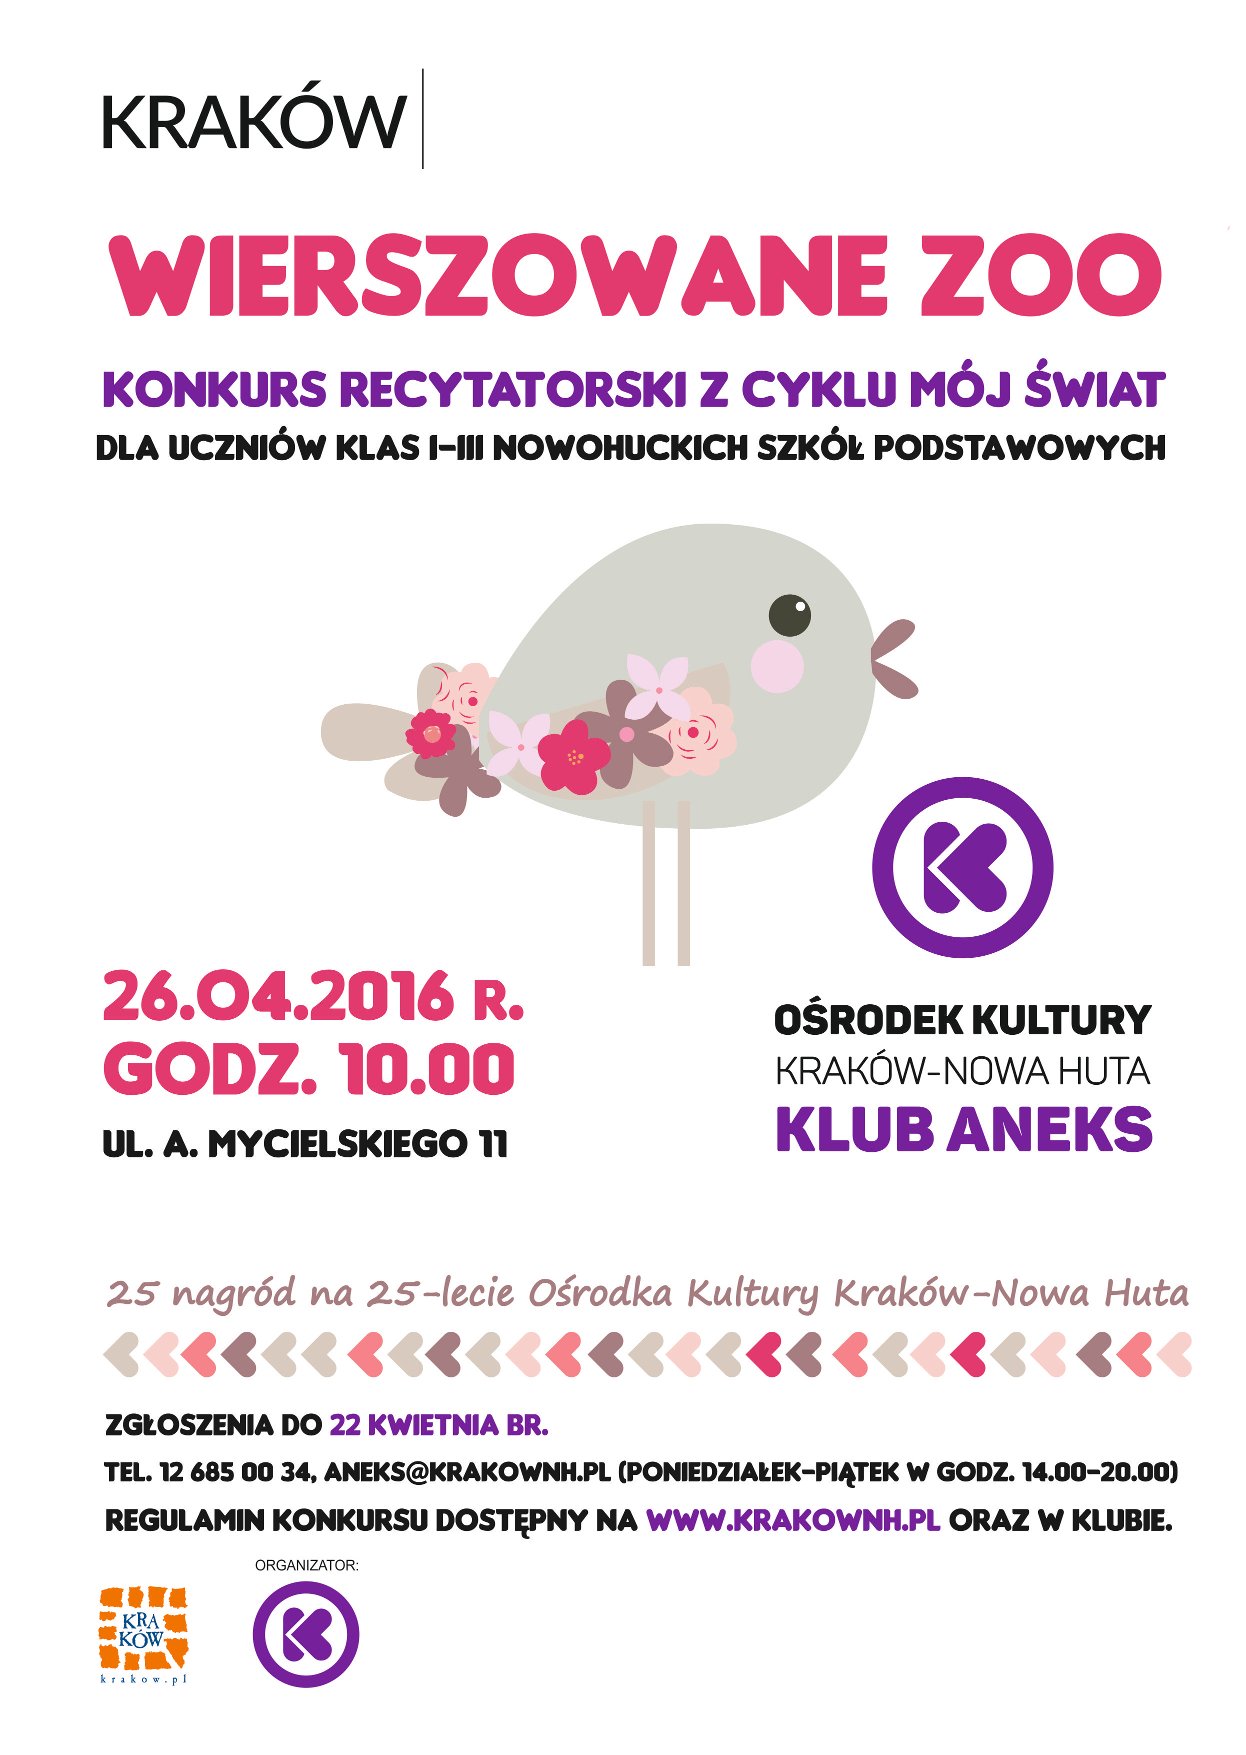 recytatorski konkurs dla uczniów w Krakowie